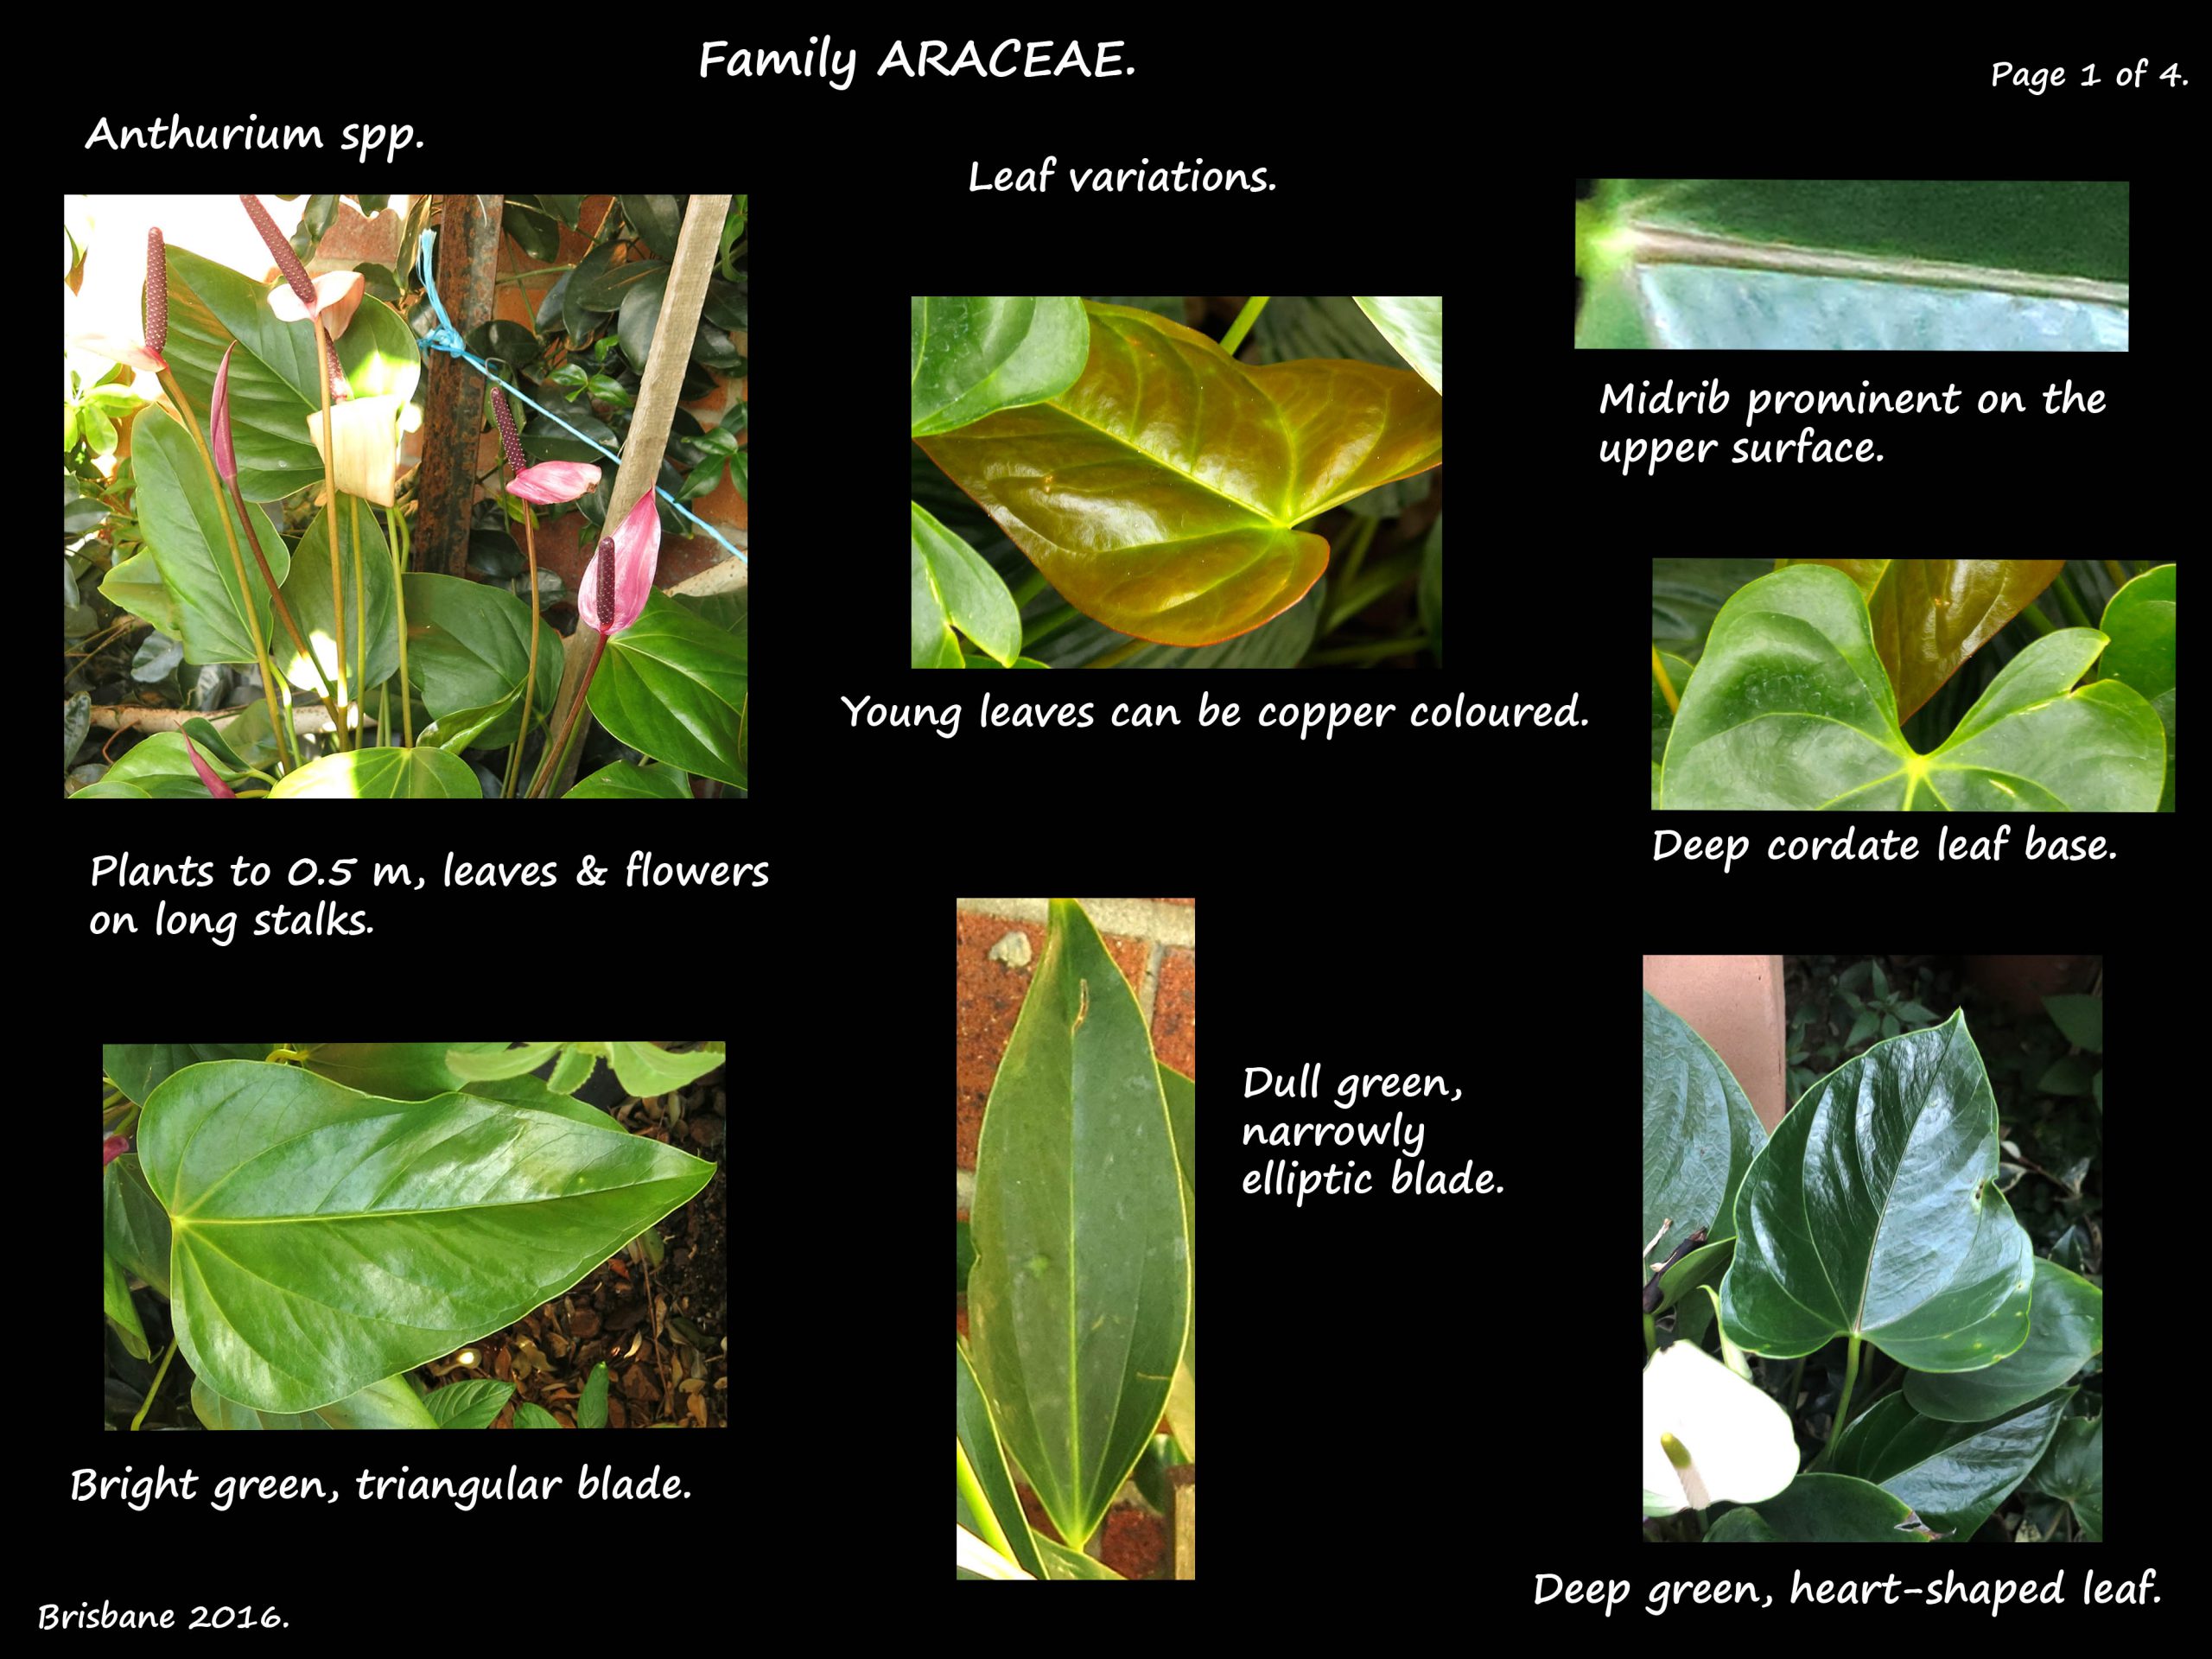 1 Anthurium leaves